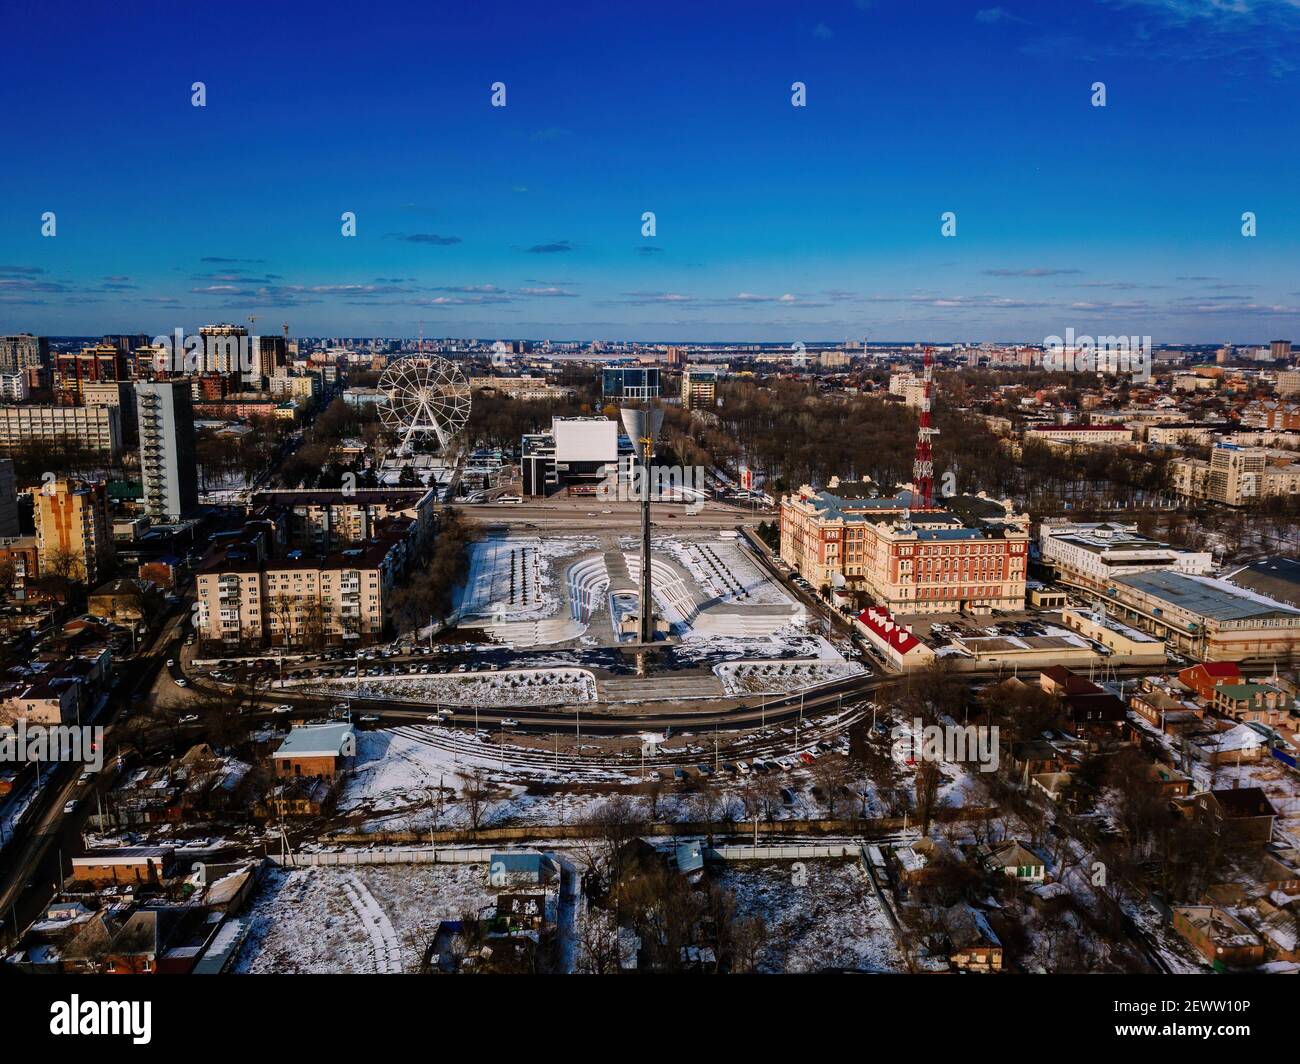 Plaza teatral y parque en Rostov-on-Don, vista aérea desde el drone en el día de invierno. Foto de stock